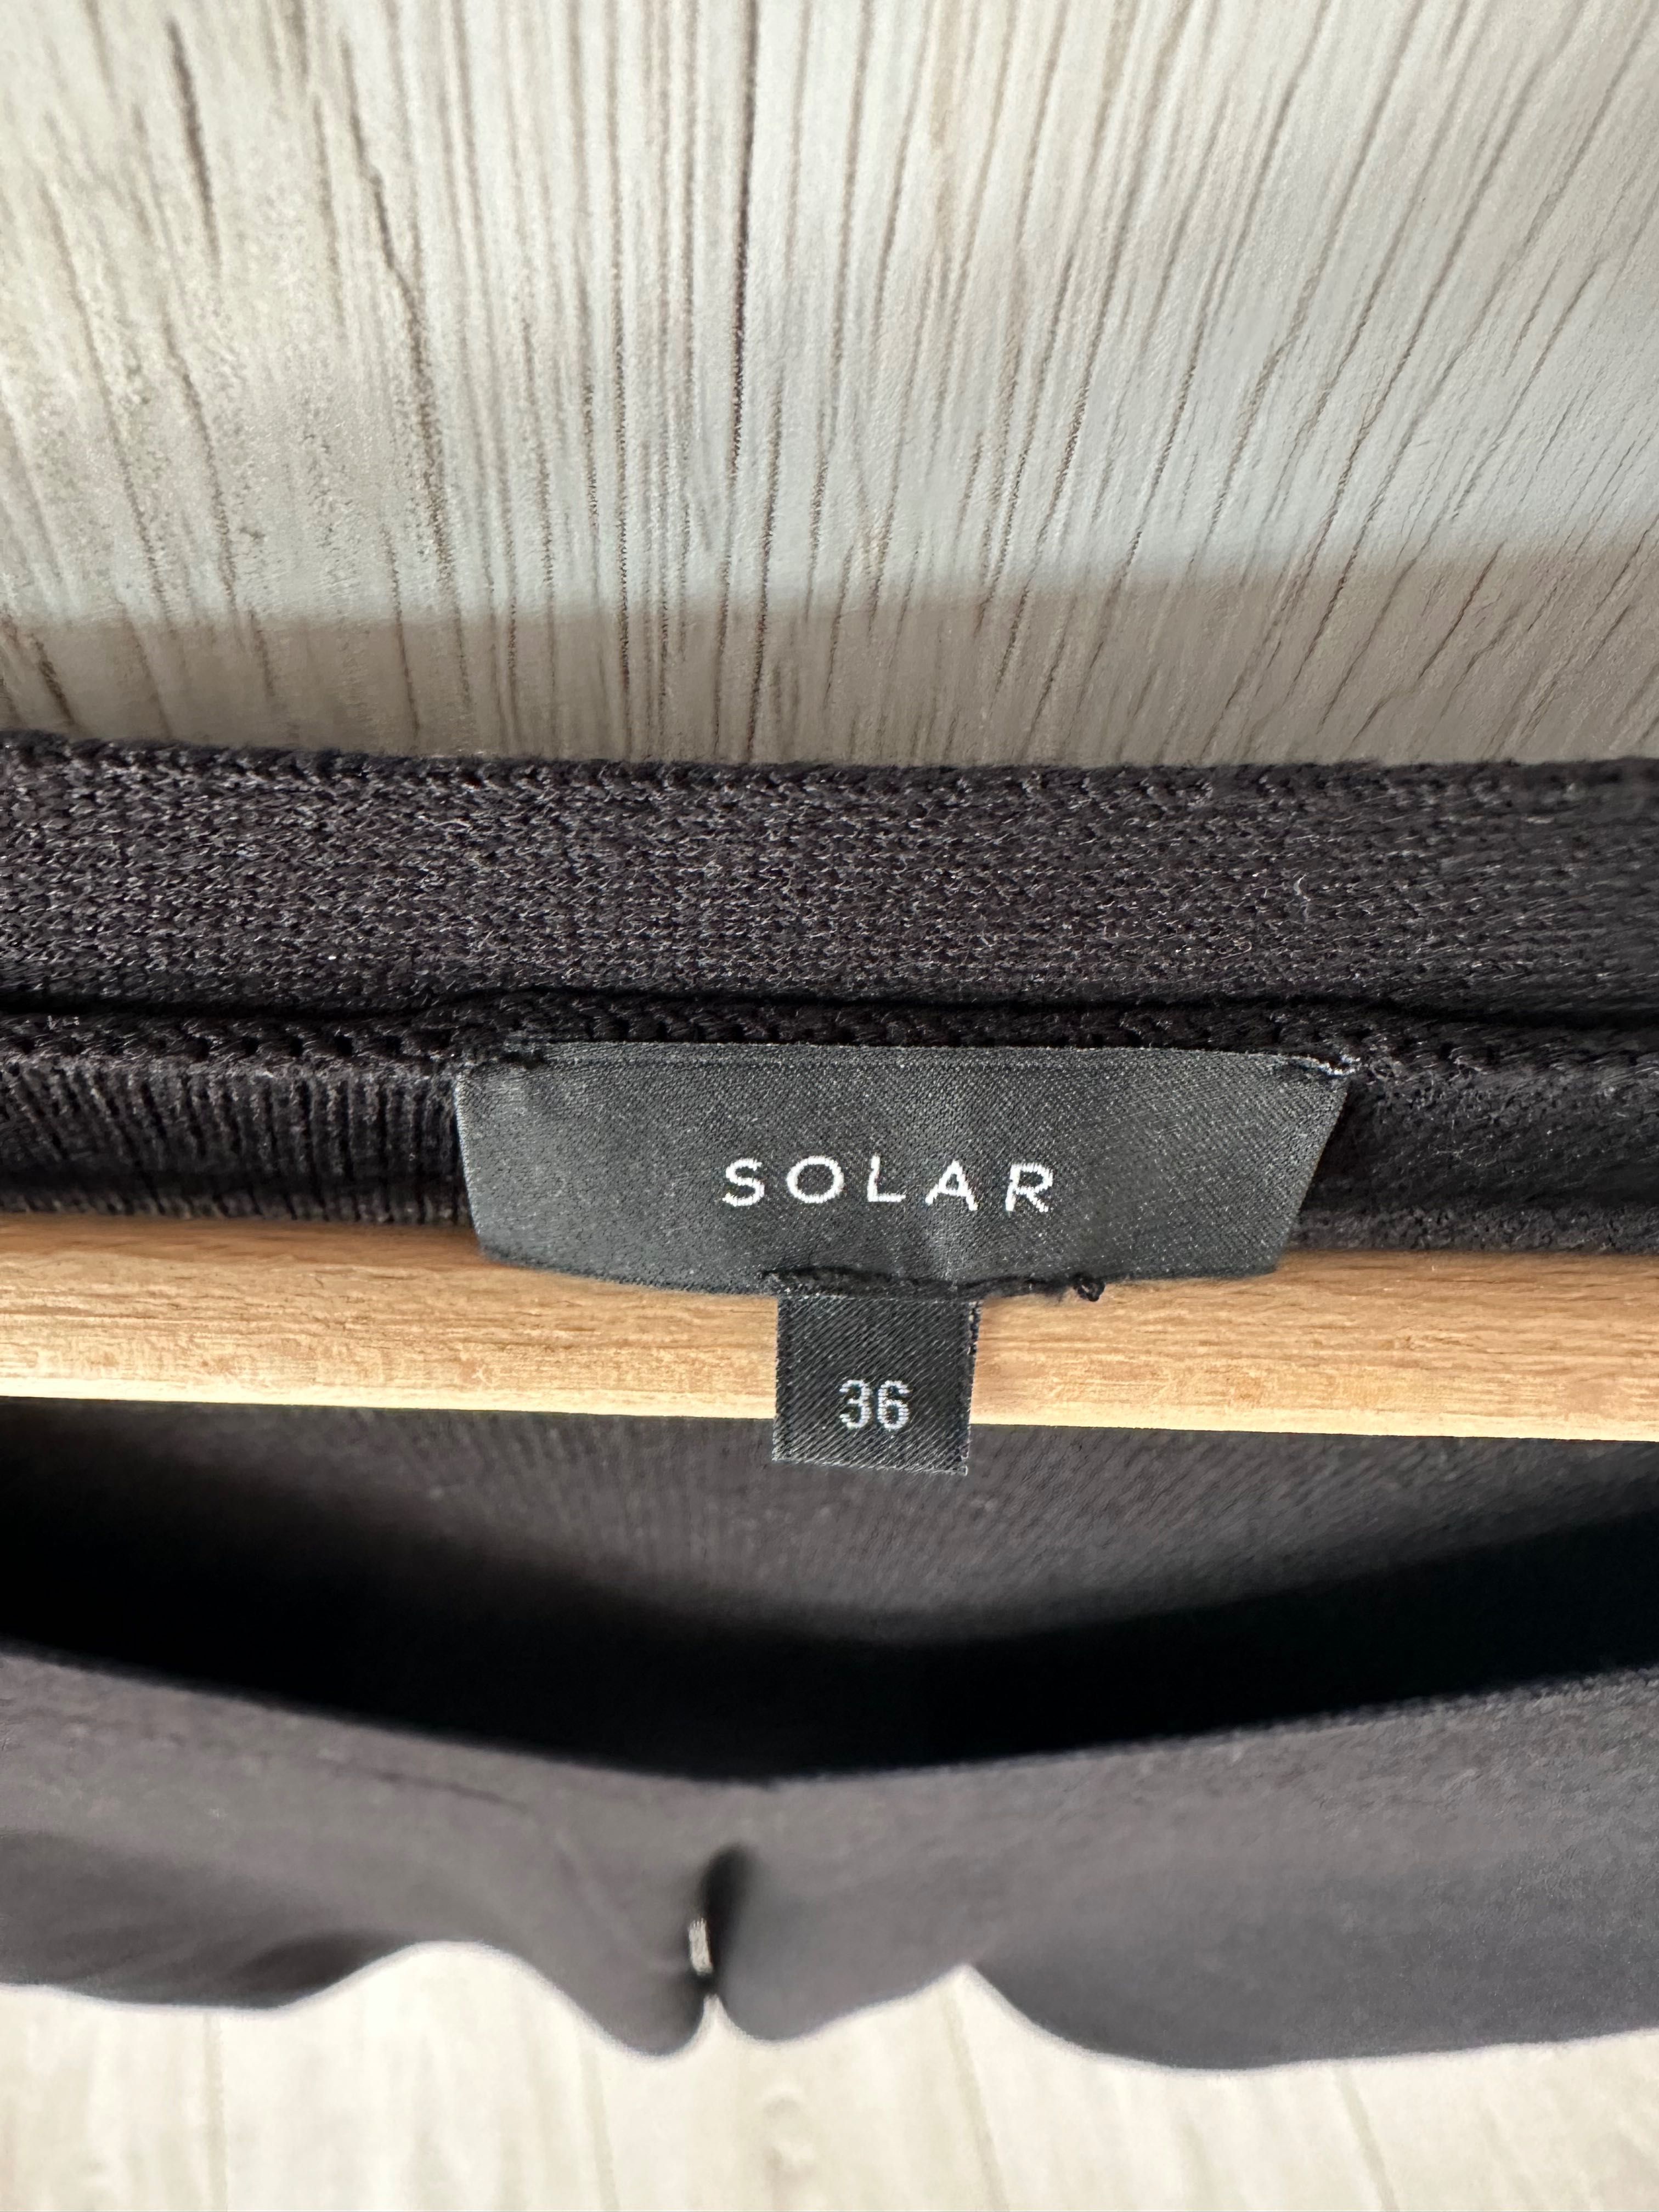 Bluzka sweter Solar r. 36 jak nowa dekolt